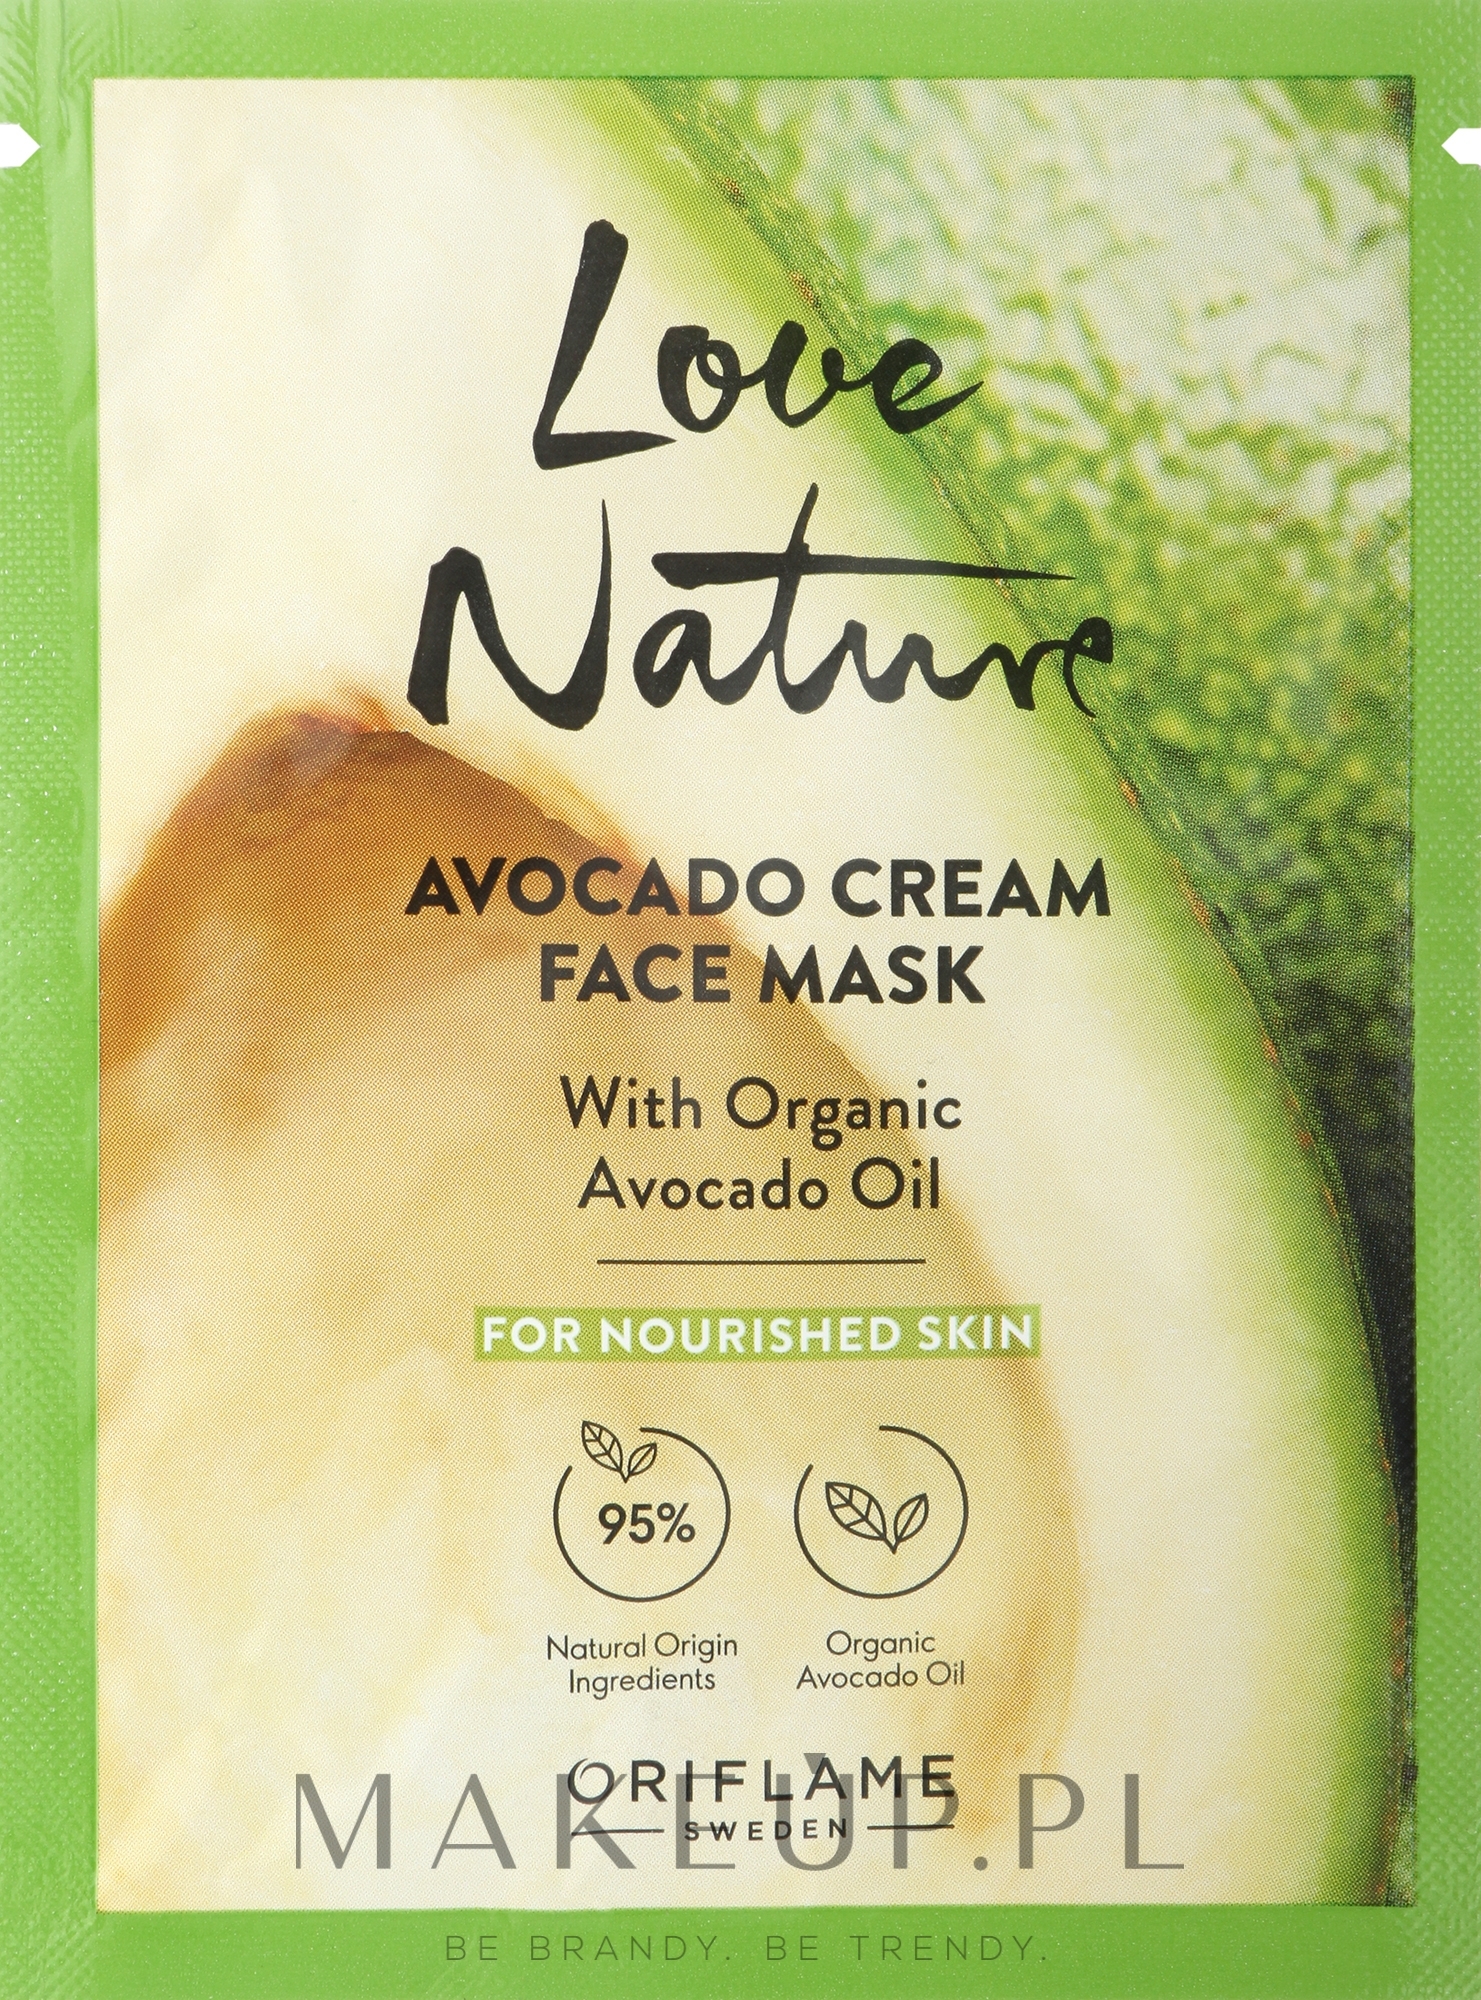 Kremowa maseczka do twarzy z organicznym awokado odżywiająca skórę - Oriflame Avocado Cream Face Mask with Organic Avocado Oil — Zdjęcie 10 ml